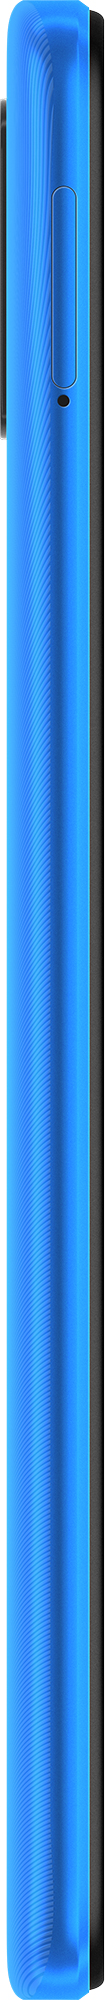 Смартфон Xiaomi Redmi 9A 2/32GB (M2006C3LG) Sky Blue nalichie